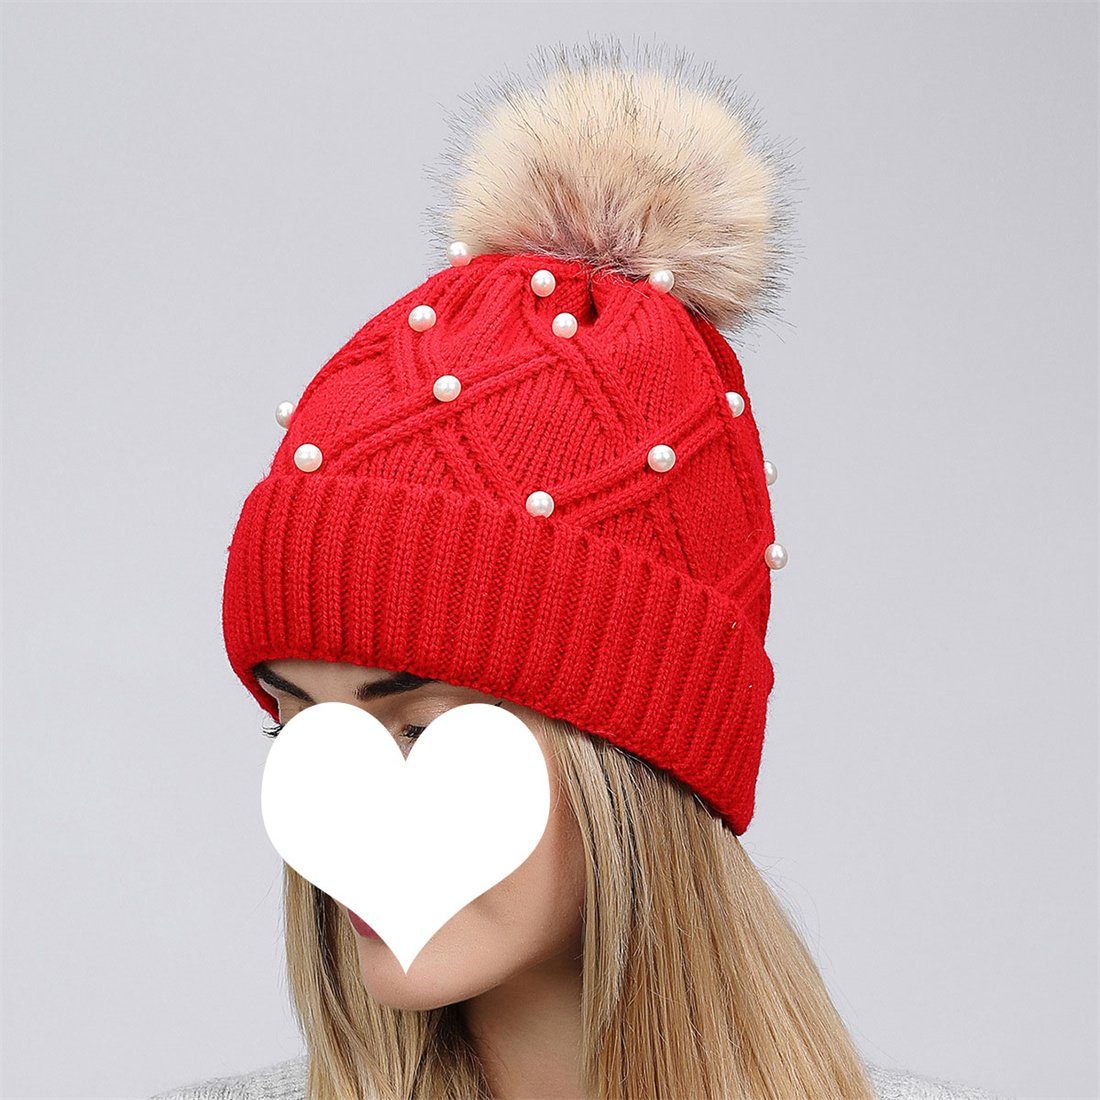 Hairball DÖRÖY Thickened Winter Cap, Knitted Cap Women's Strickmütze Fashion Schwarz Warm Woolen